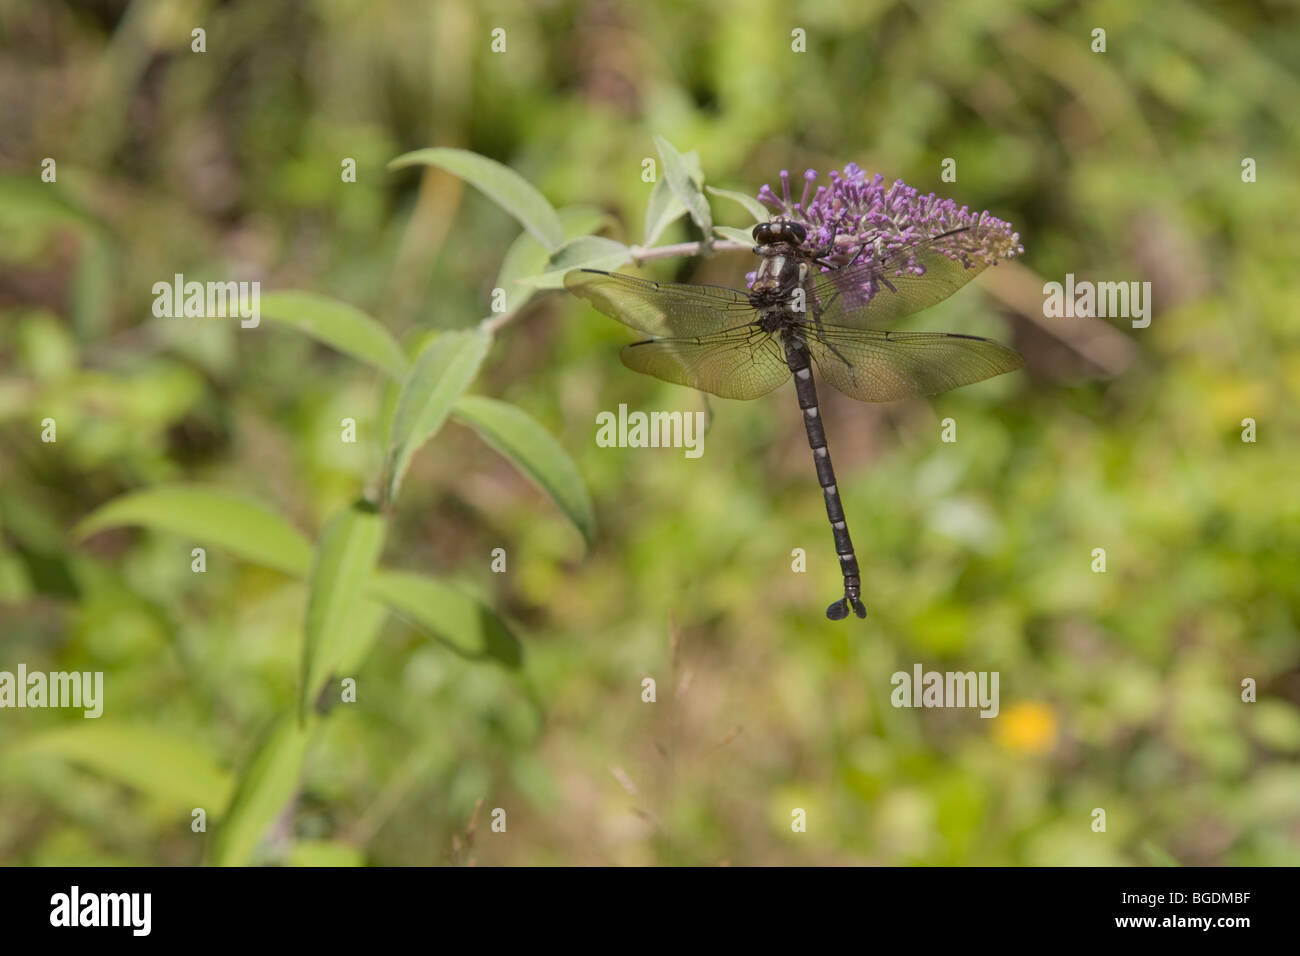 Dragonfly, Libelle on butterfly bush buddleja davidii Stock Photo